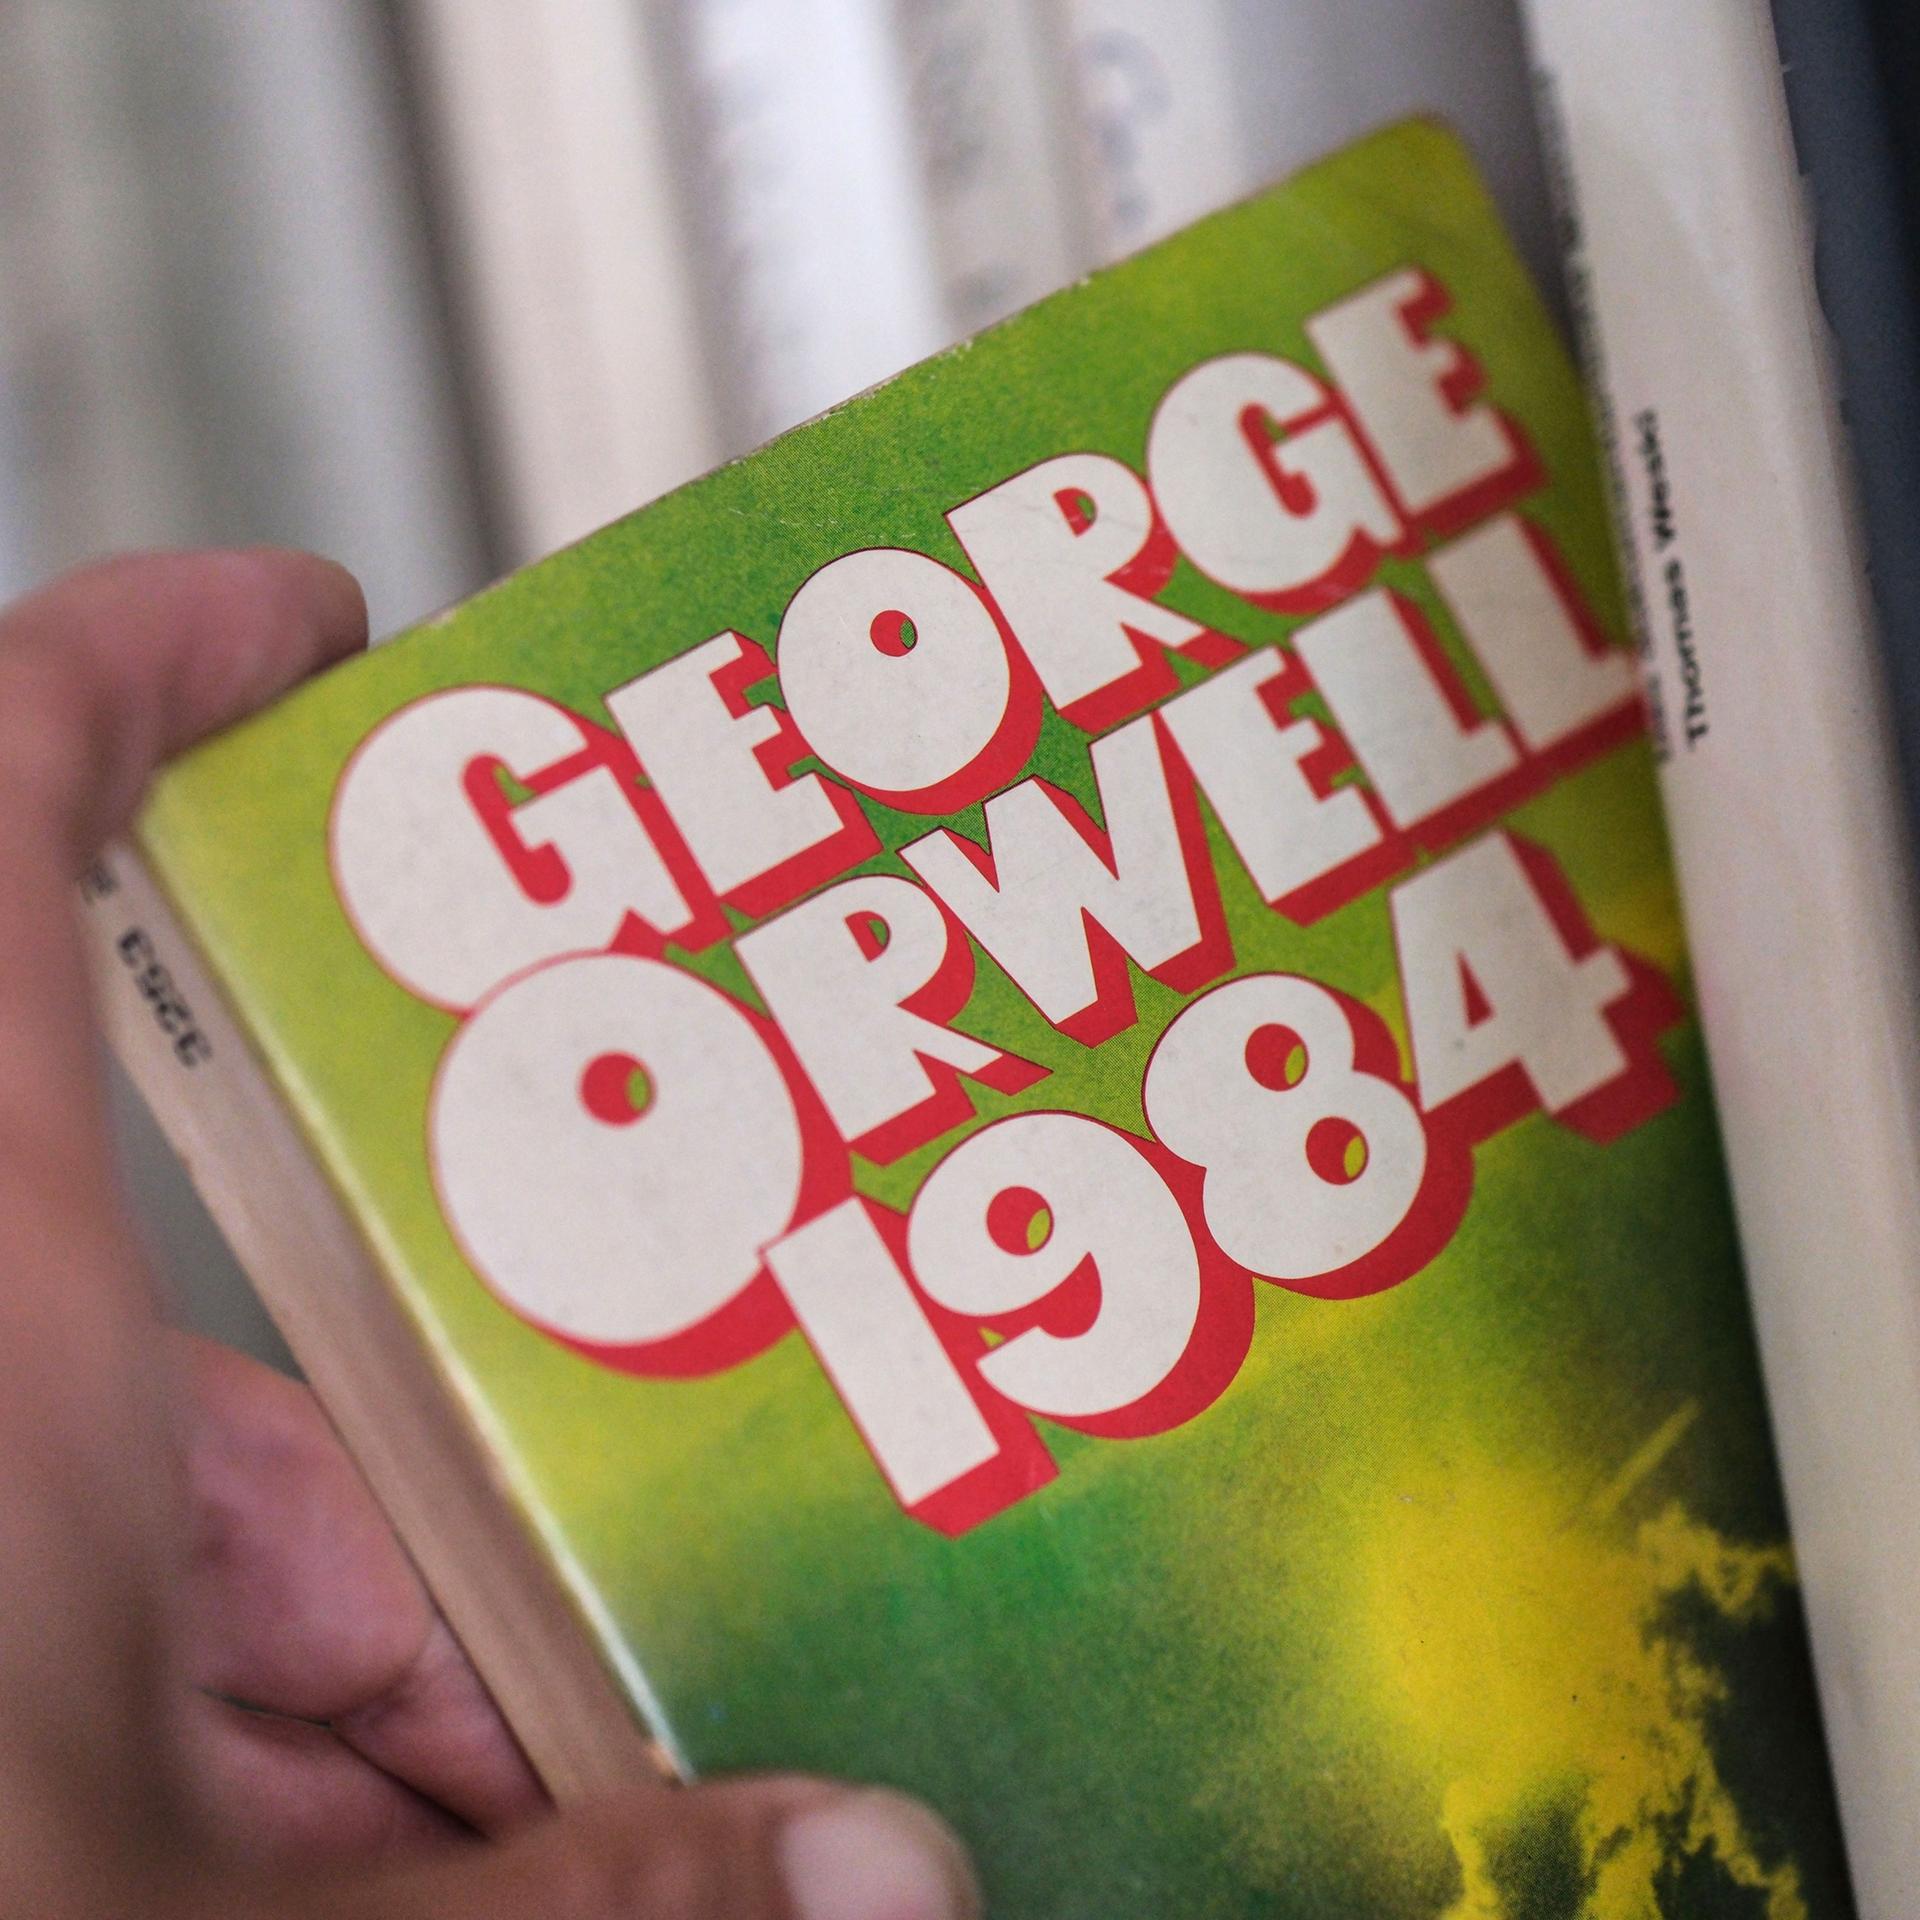 Orwells „1984“ – Ein Roman als Warnung